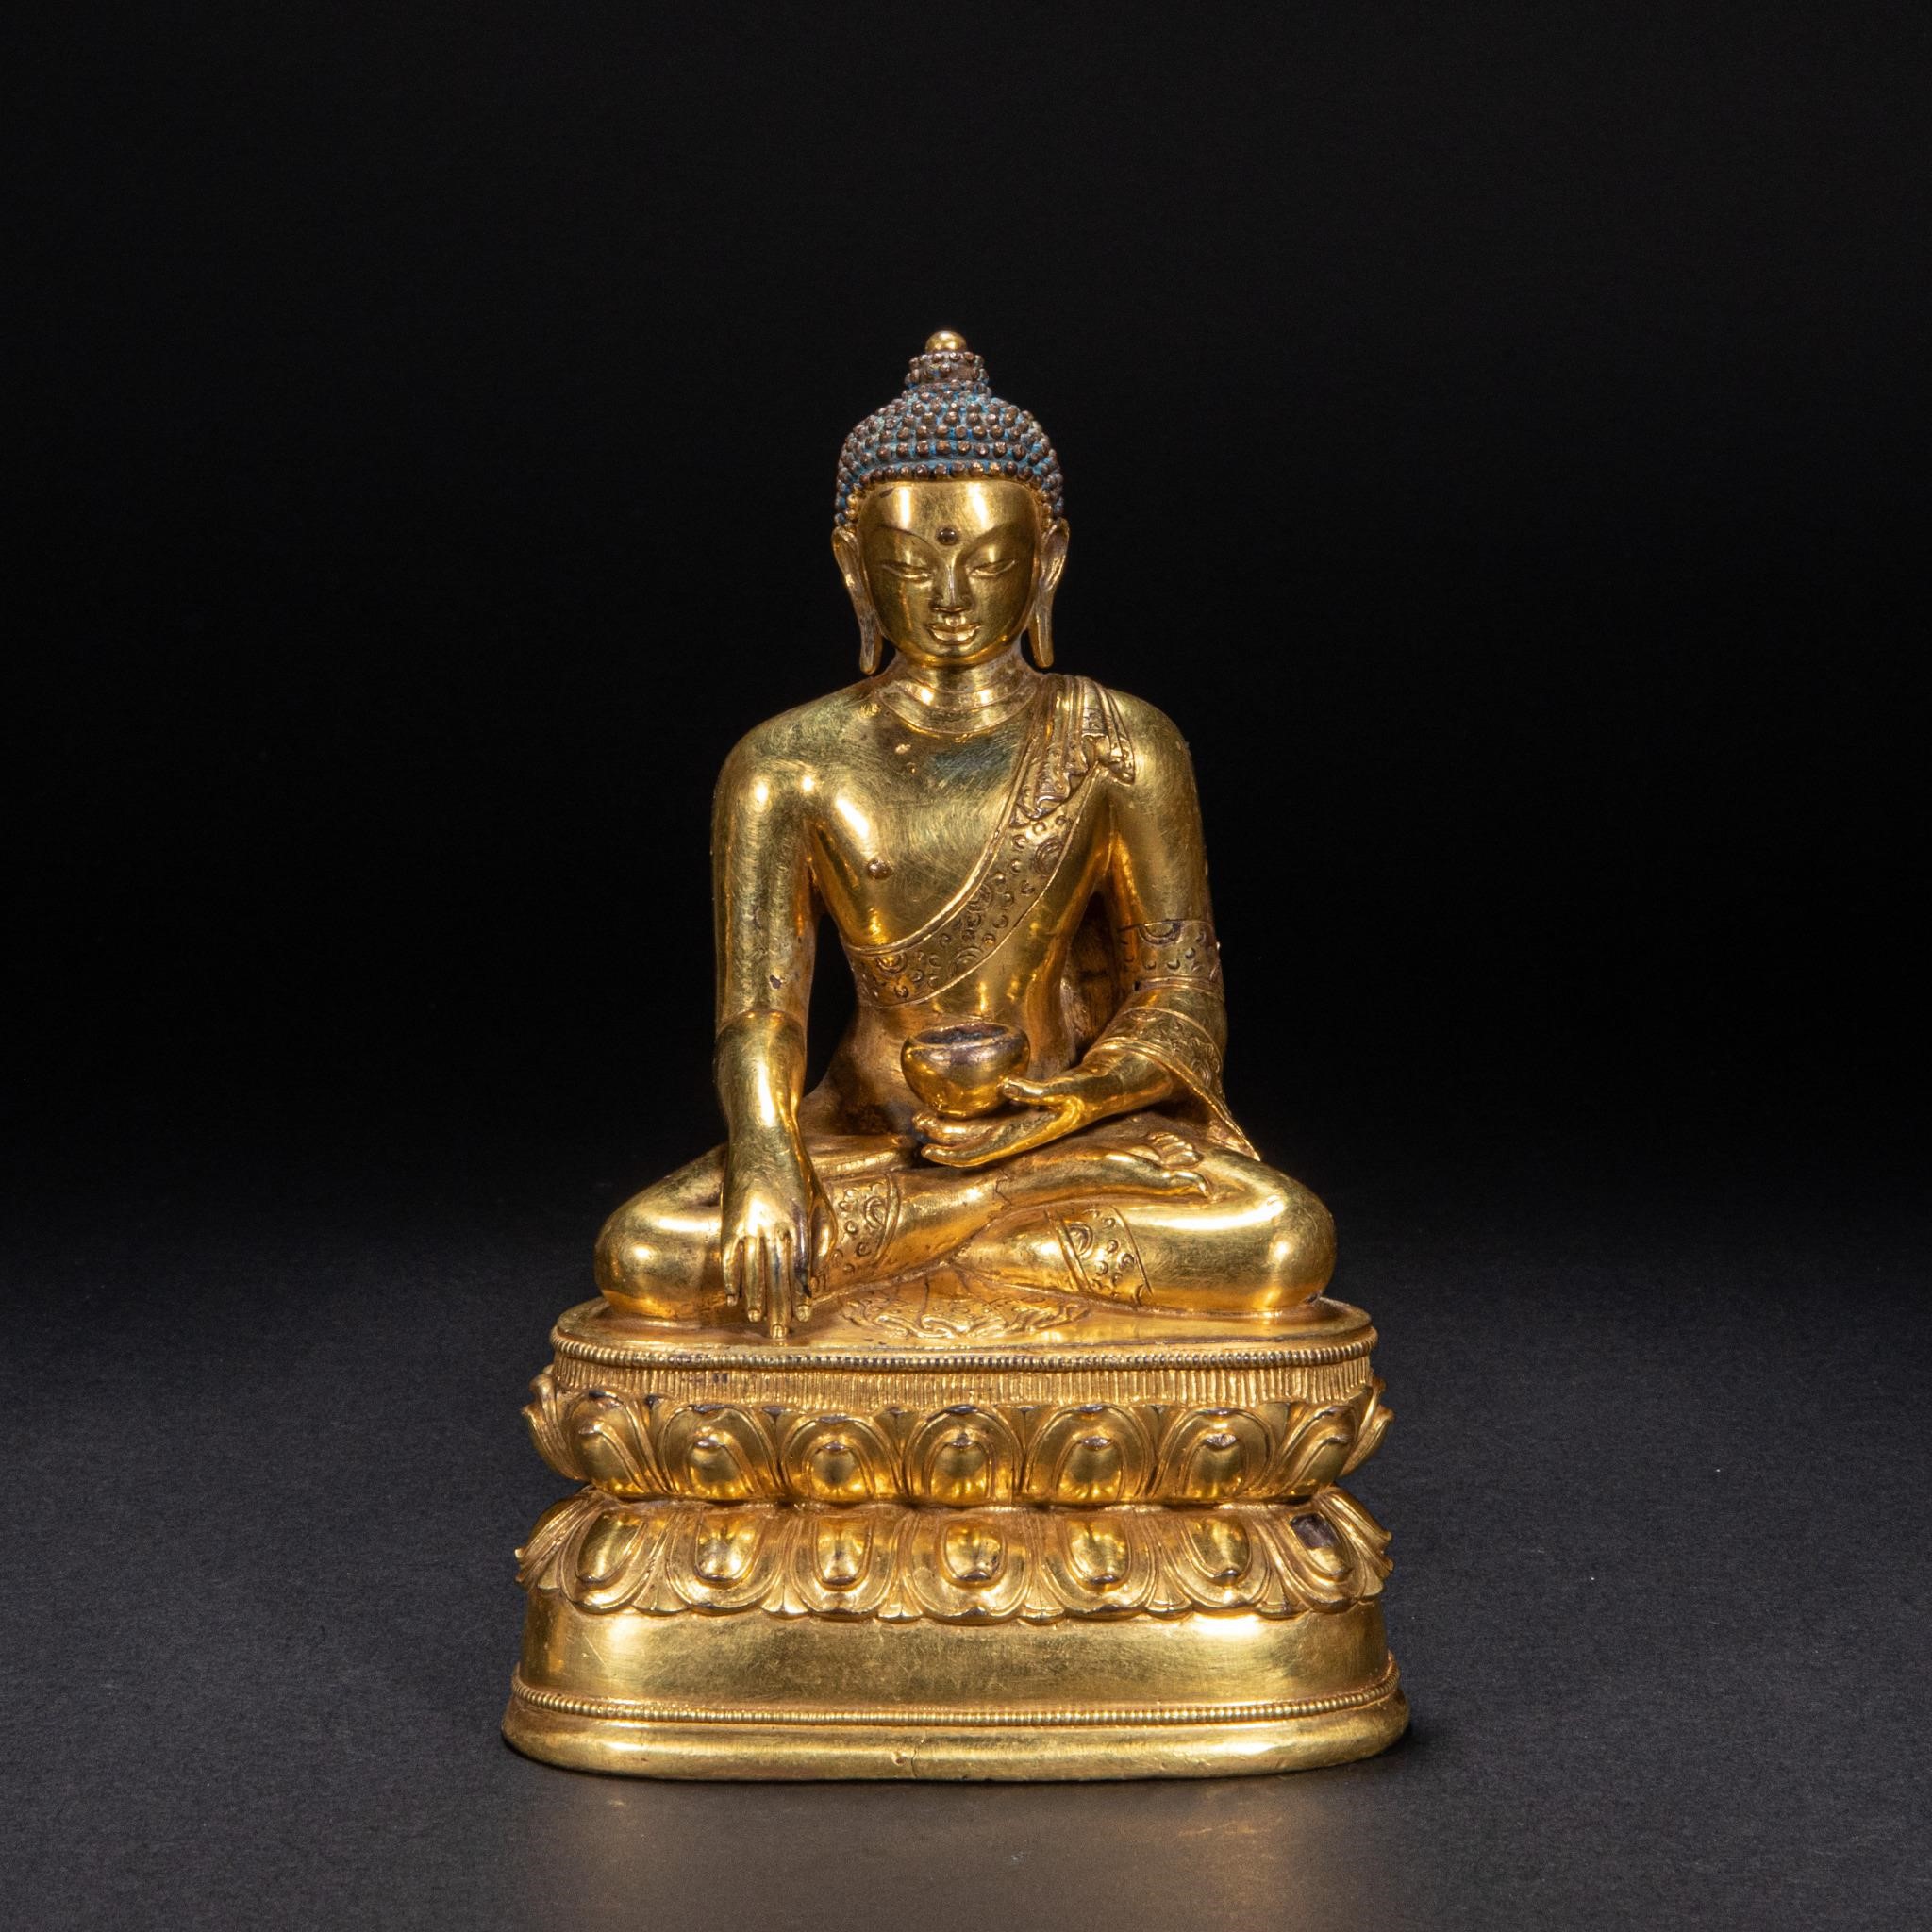 Bronze gilded Buddha statue